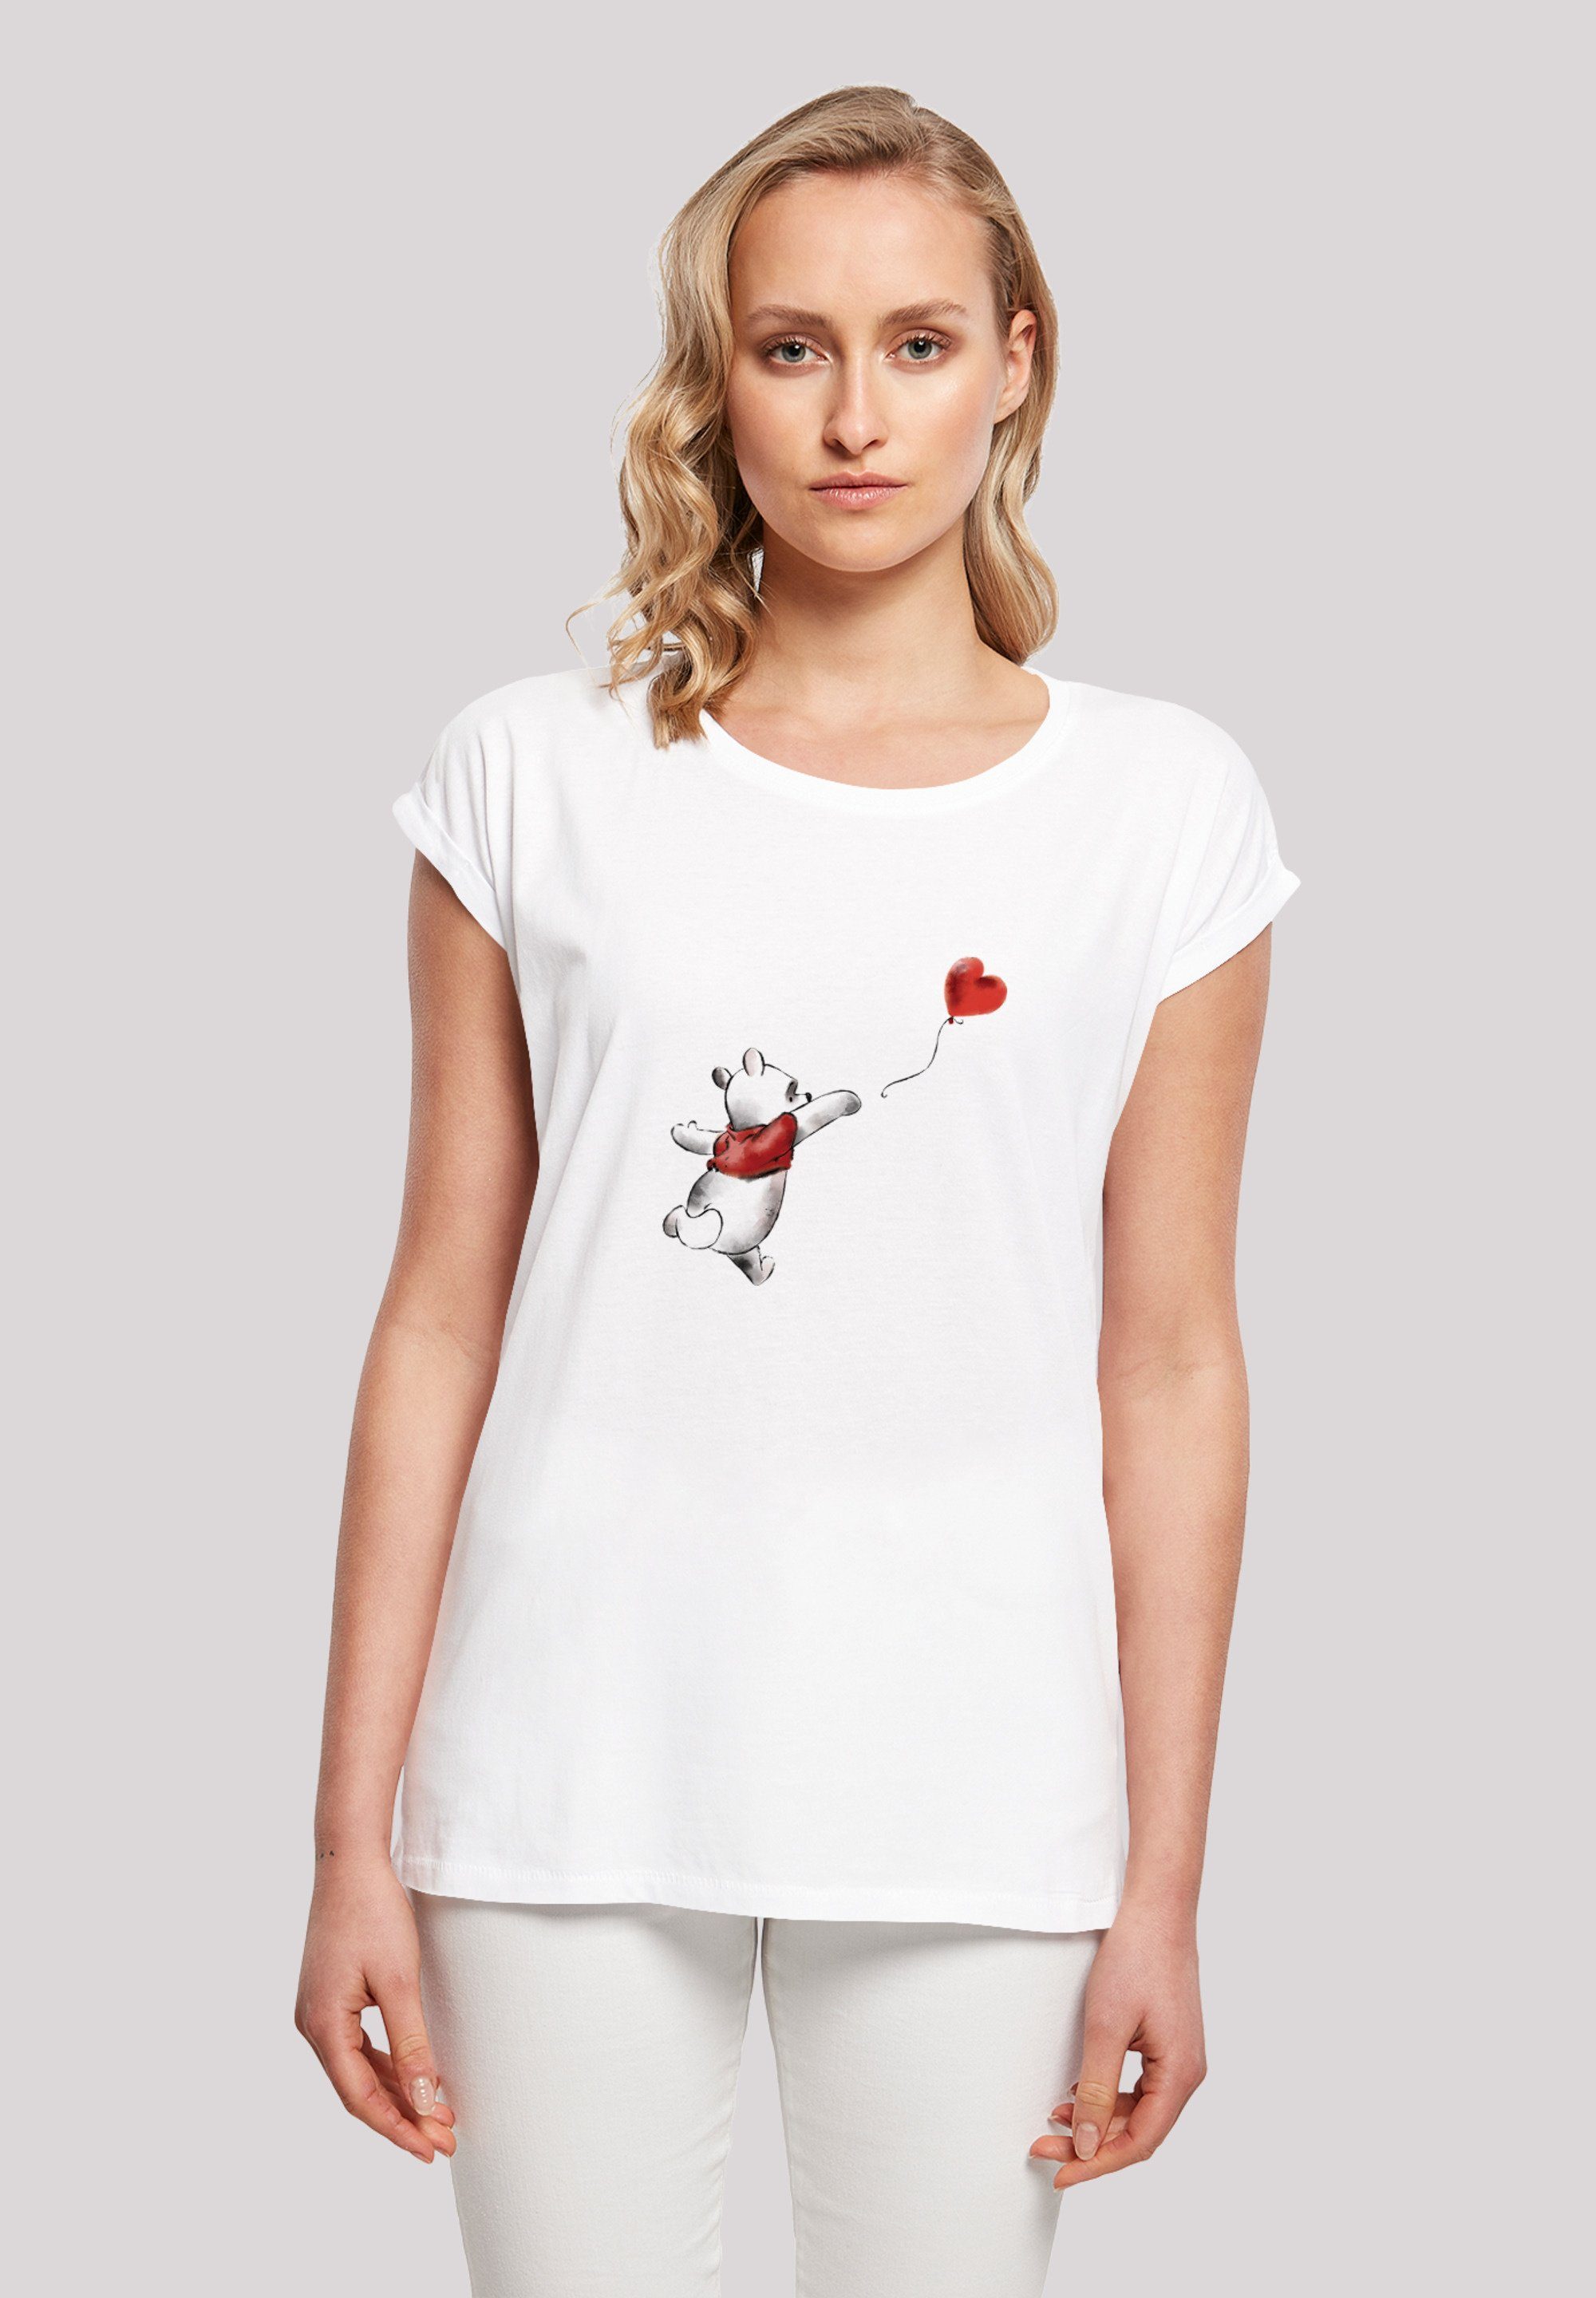 F4NT4STIC T-Shirt Winnie Puuh Winnie & Balloon Print weiß